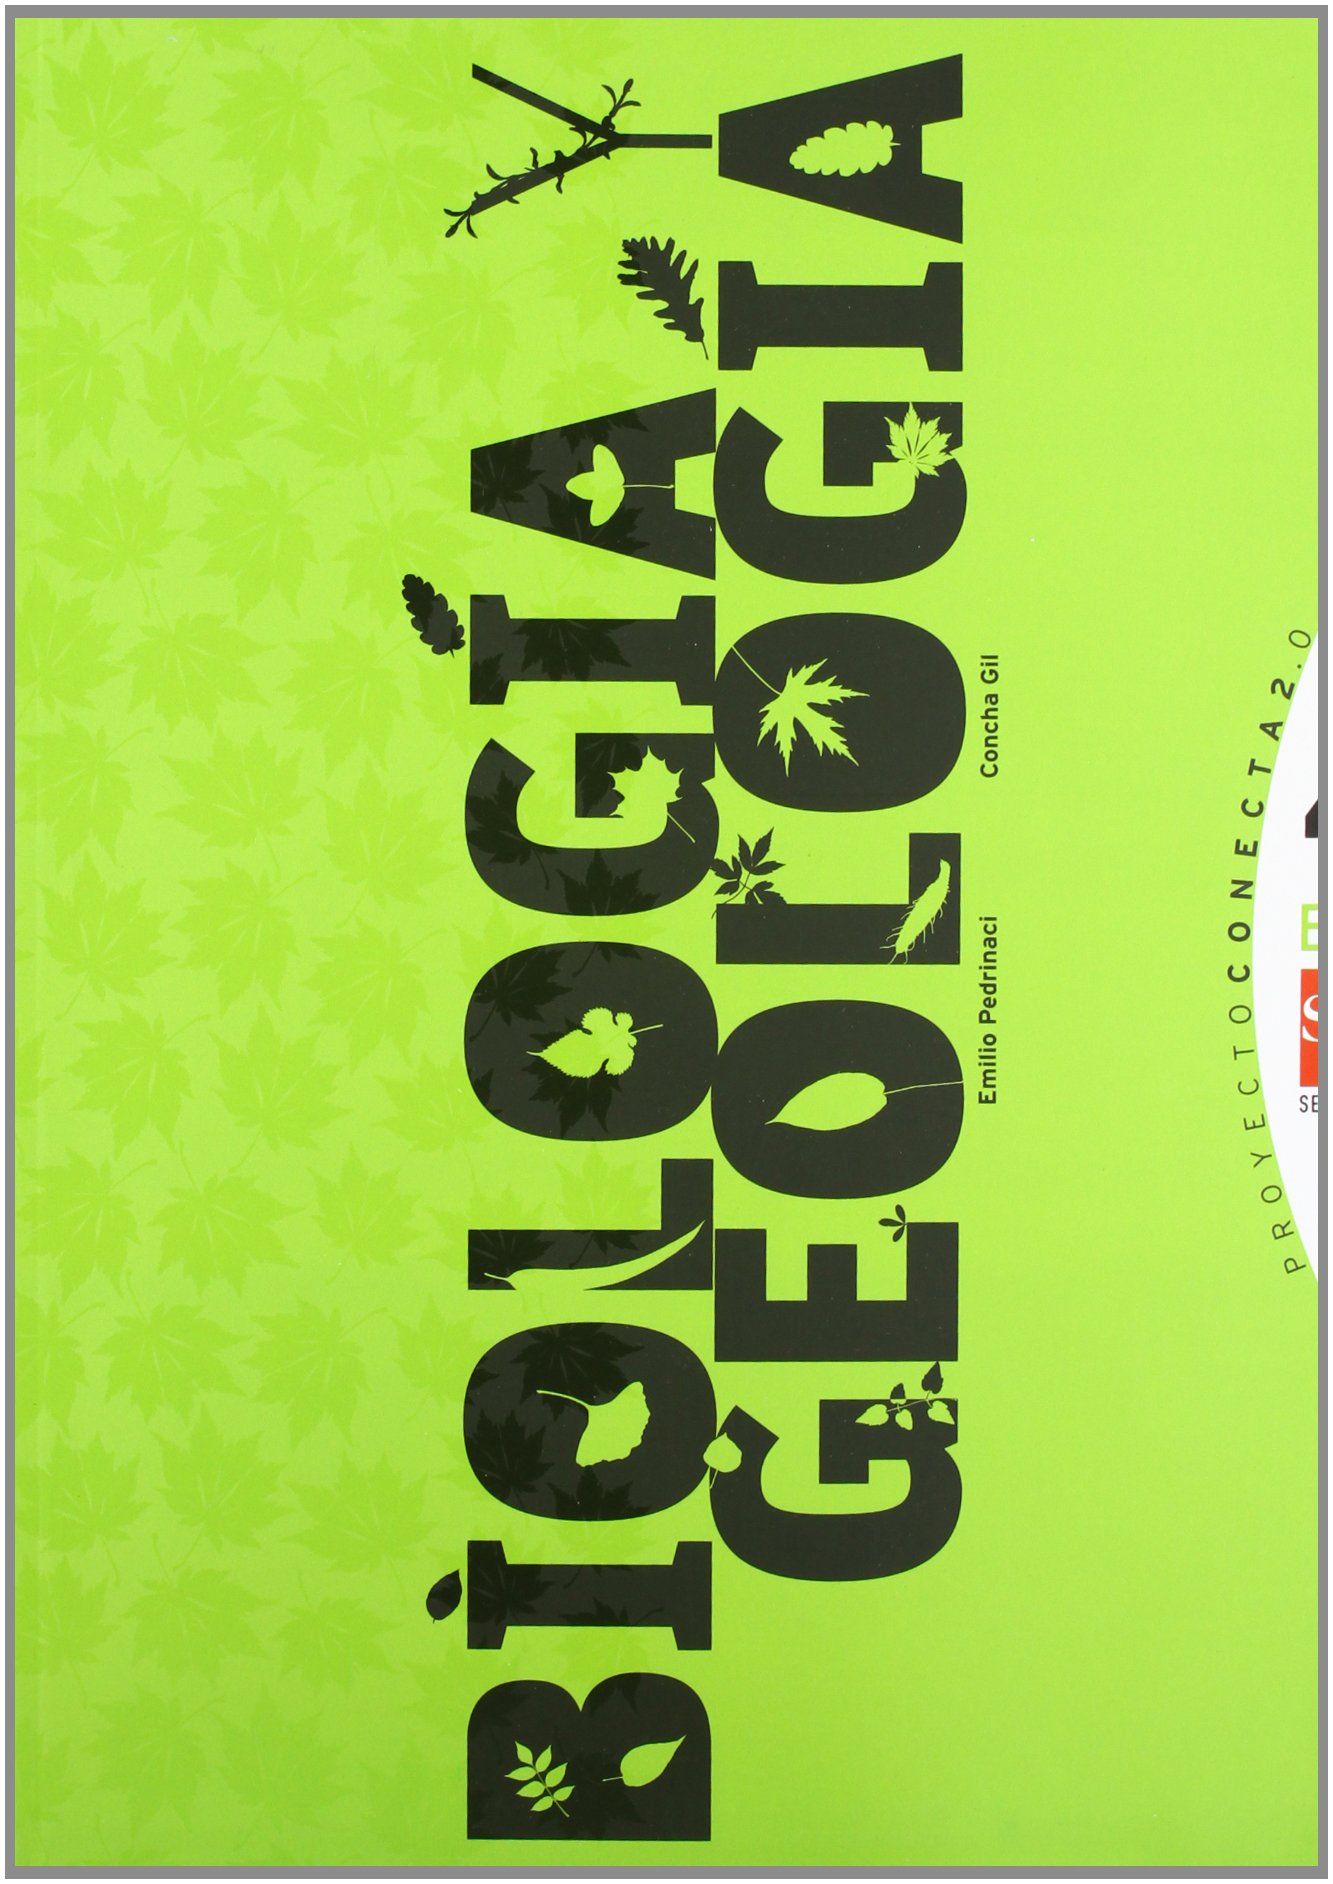 Solucionario Biologia Y Geologia 3 Eso Santillanal Fix portada-libro-biologia-geologia-4-eso-ediciones-sm-2012